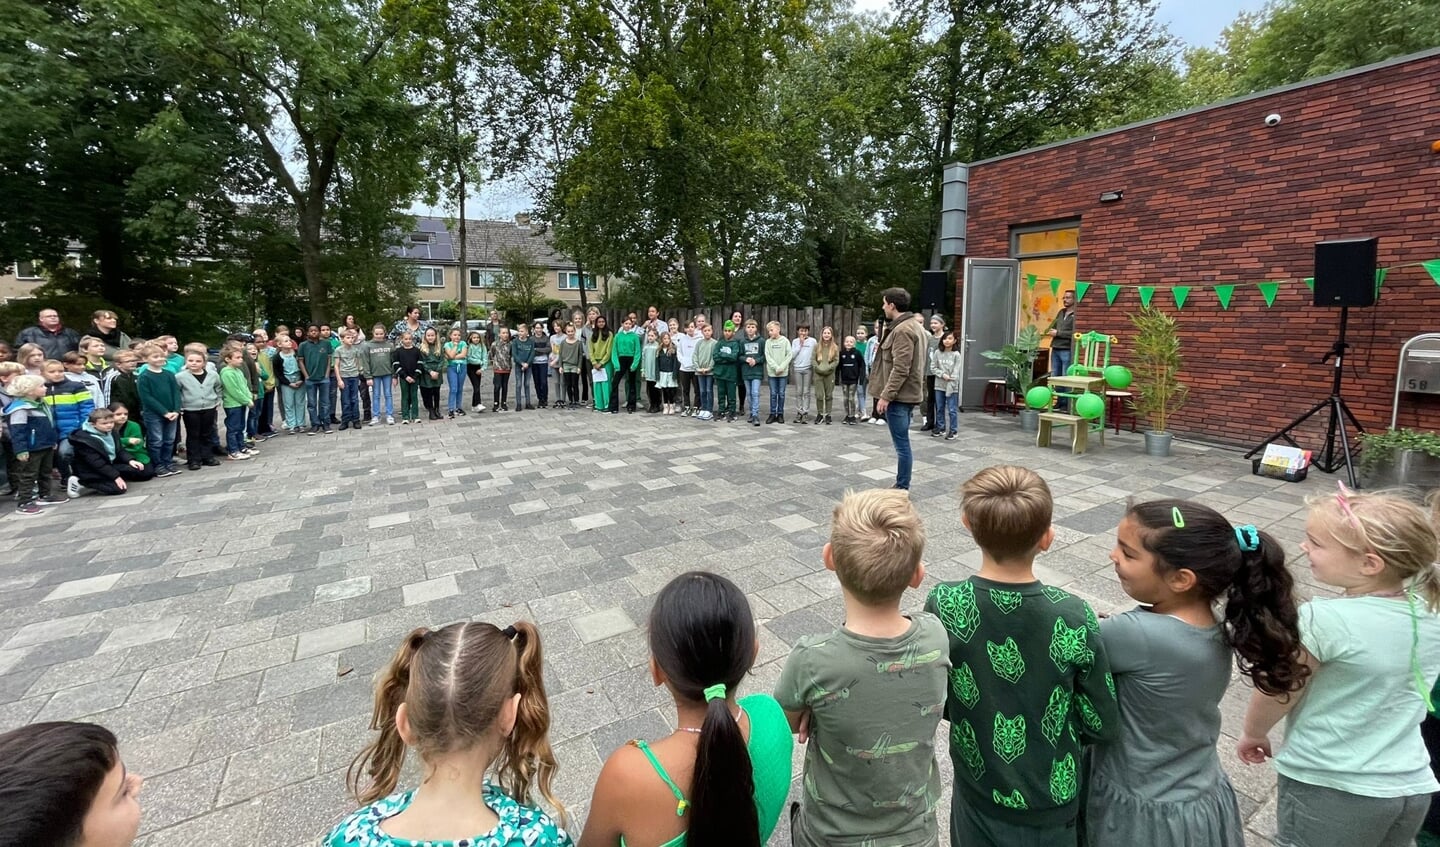 De ochtend van 5 oktober. Alle leerlingen en leerkrachten van de Leiderdorpse basisschool De Regenboog staan in het groen gekleed buiten om zingend, dansend en (voor)lezend de Kinderboekenweek te beginnen. 